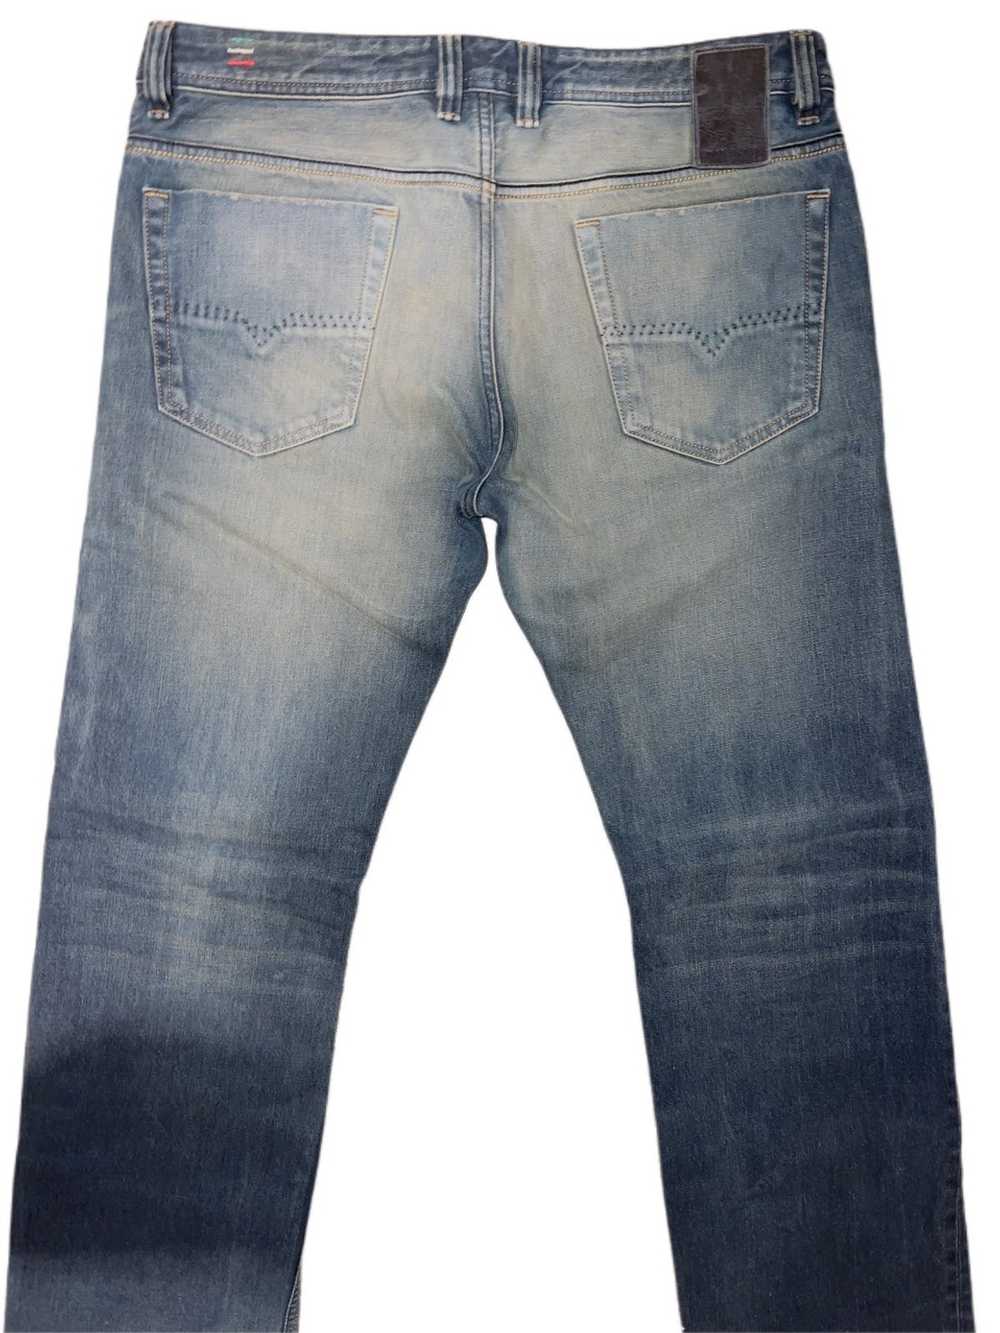 Diesel Denim jeans - image 2